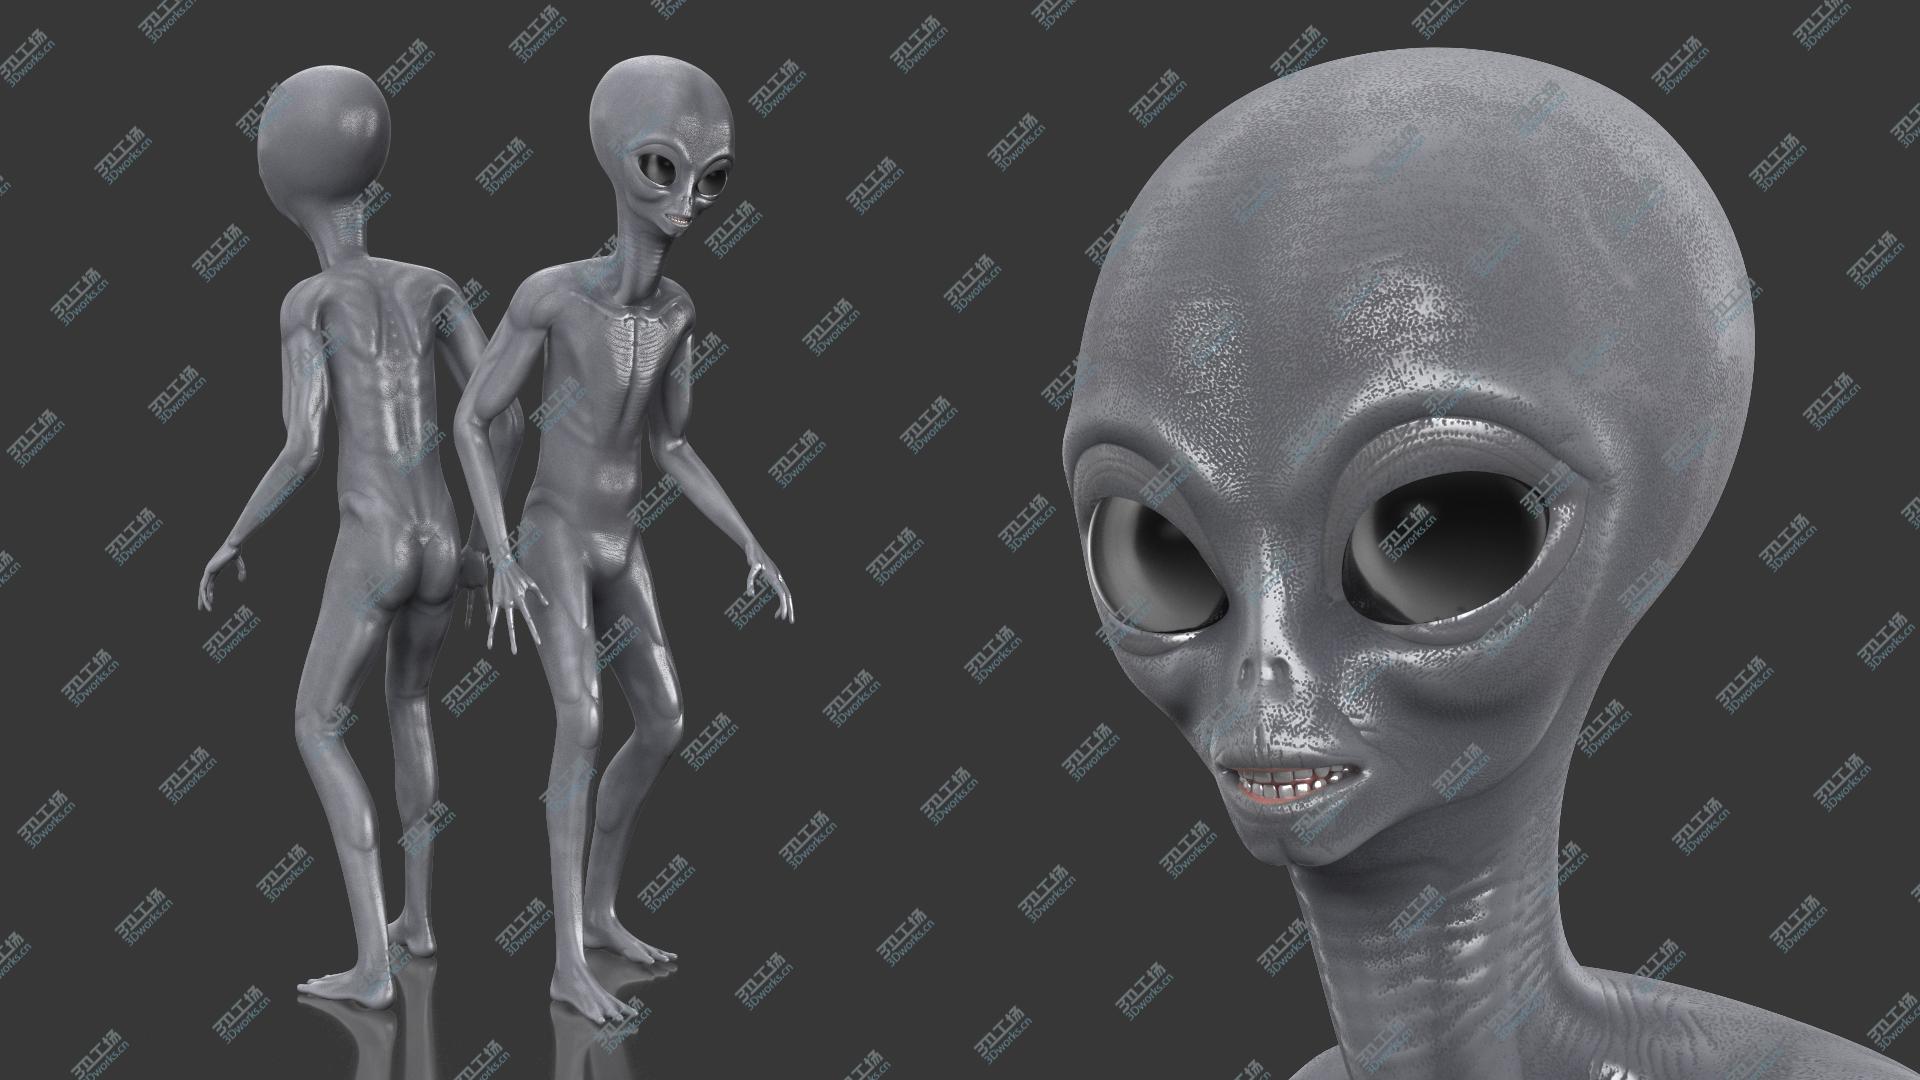 images/goods_img/202104093/3D Alien Rigged model/5.jpg